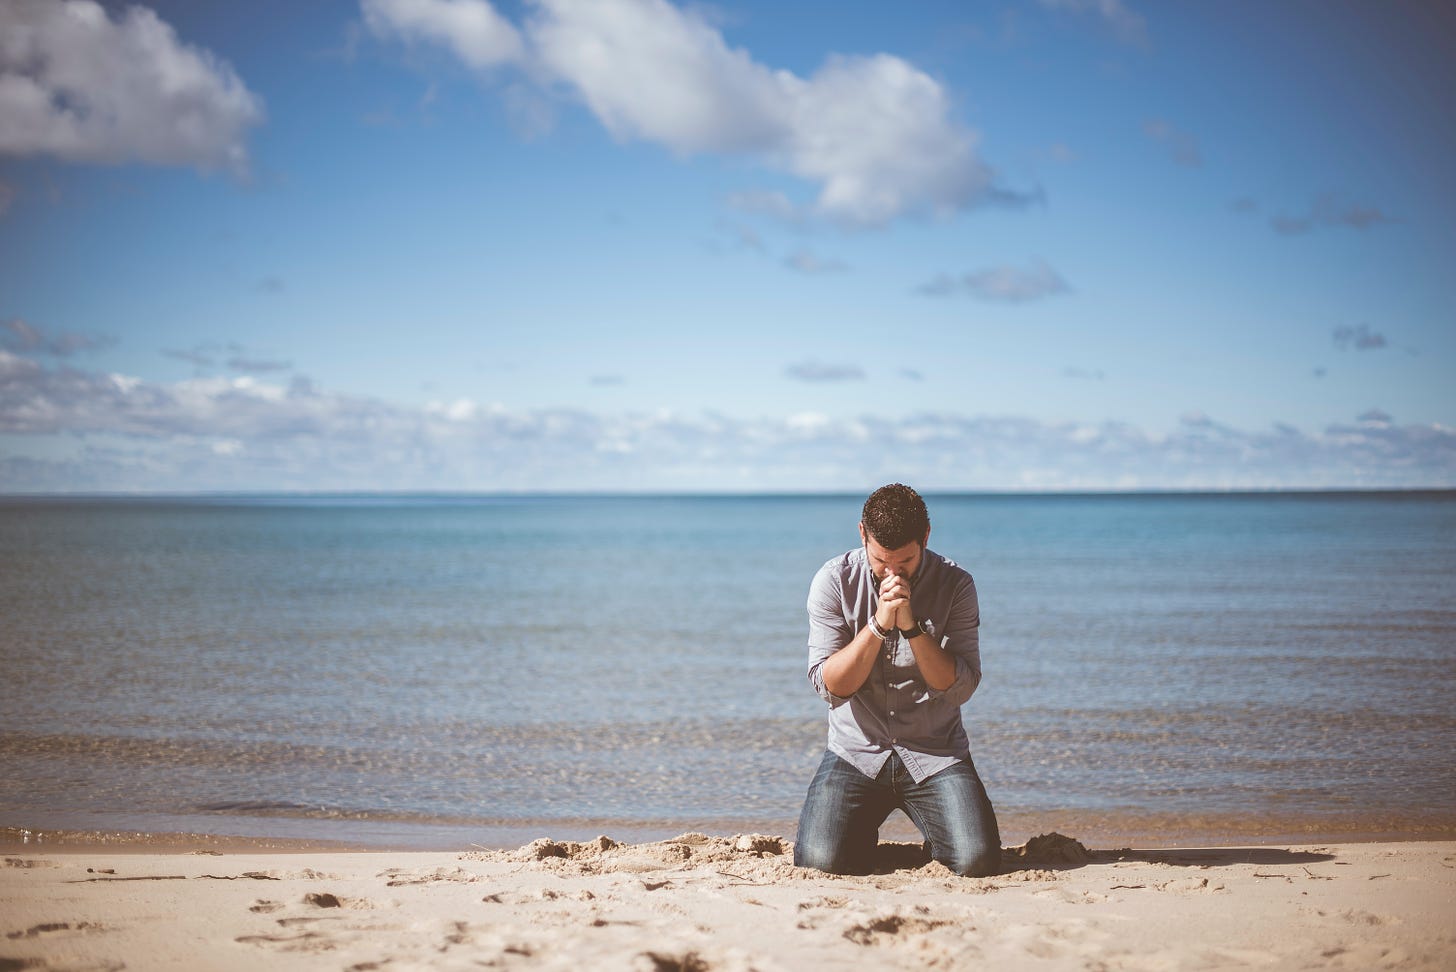 Man on beach praying